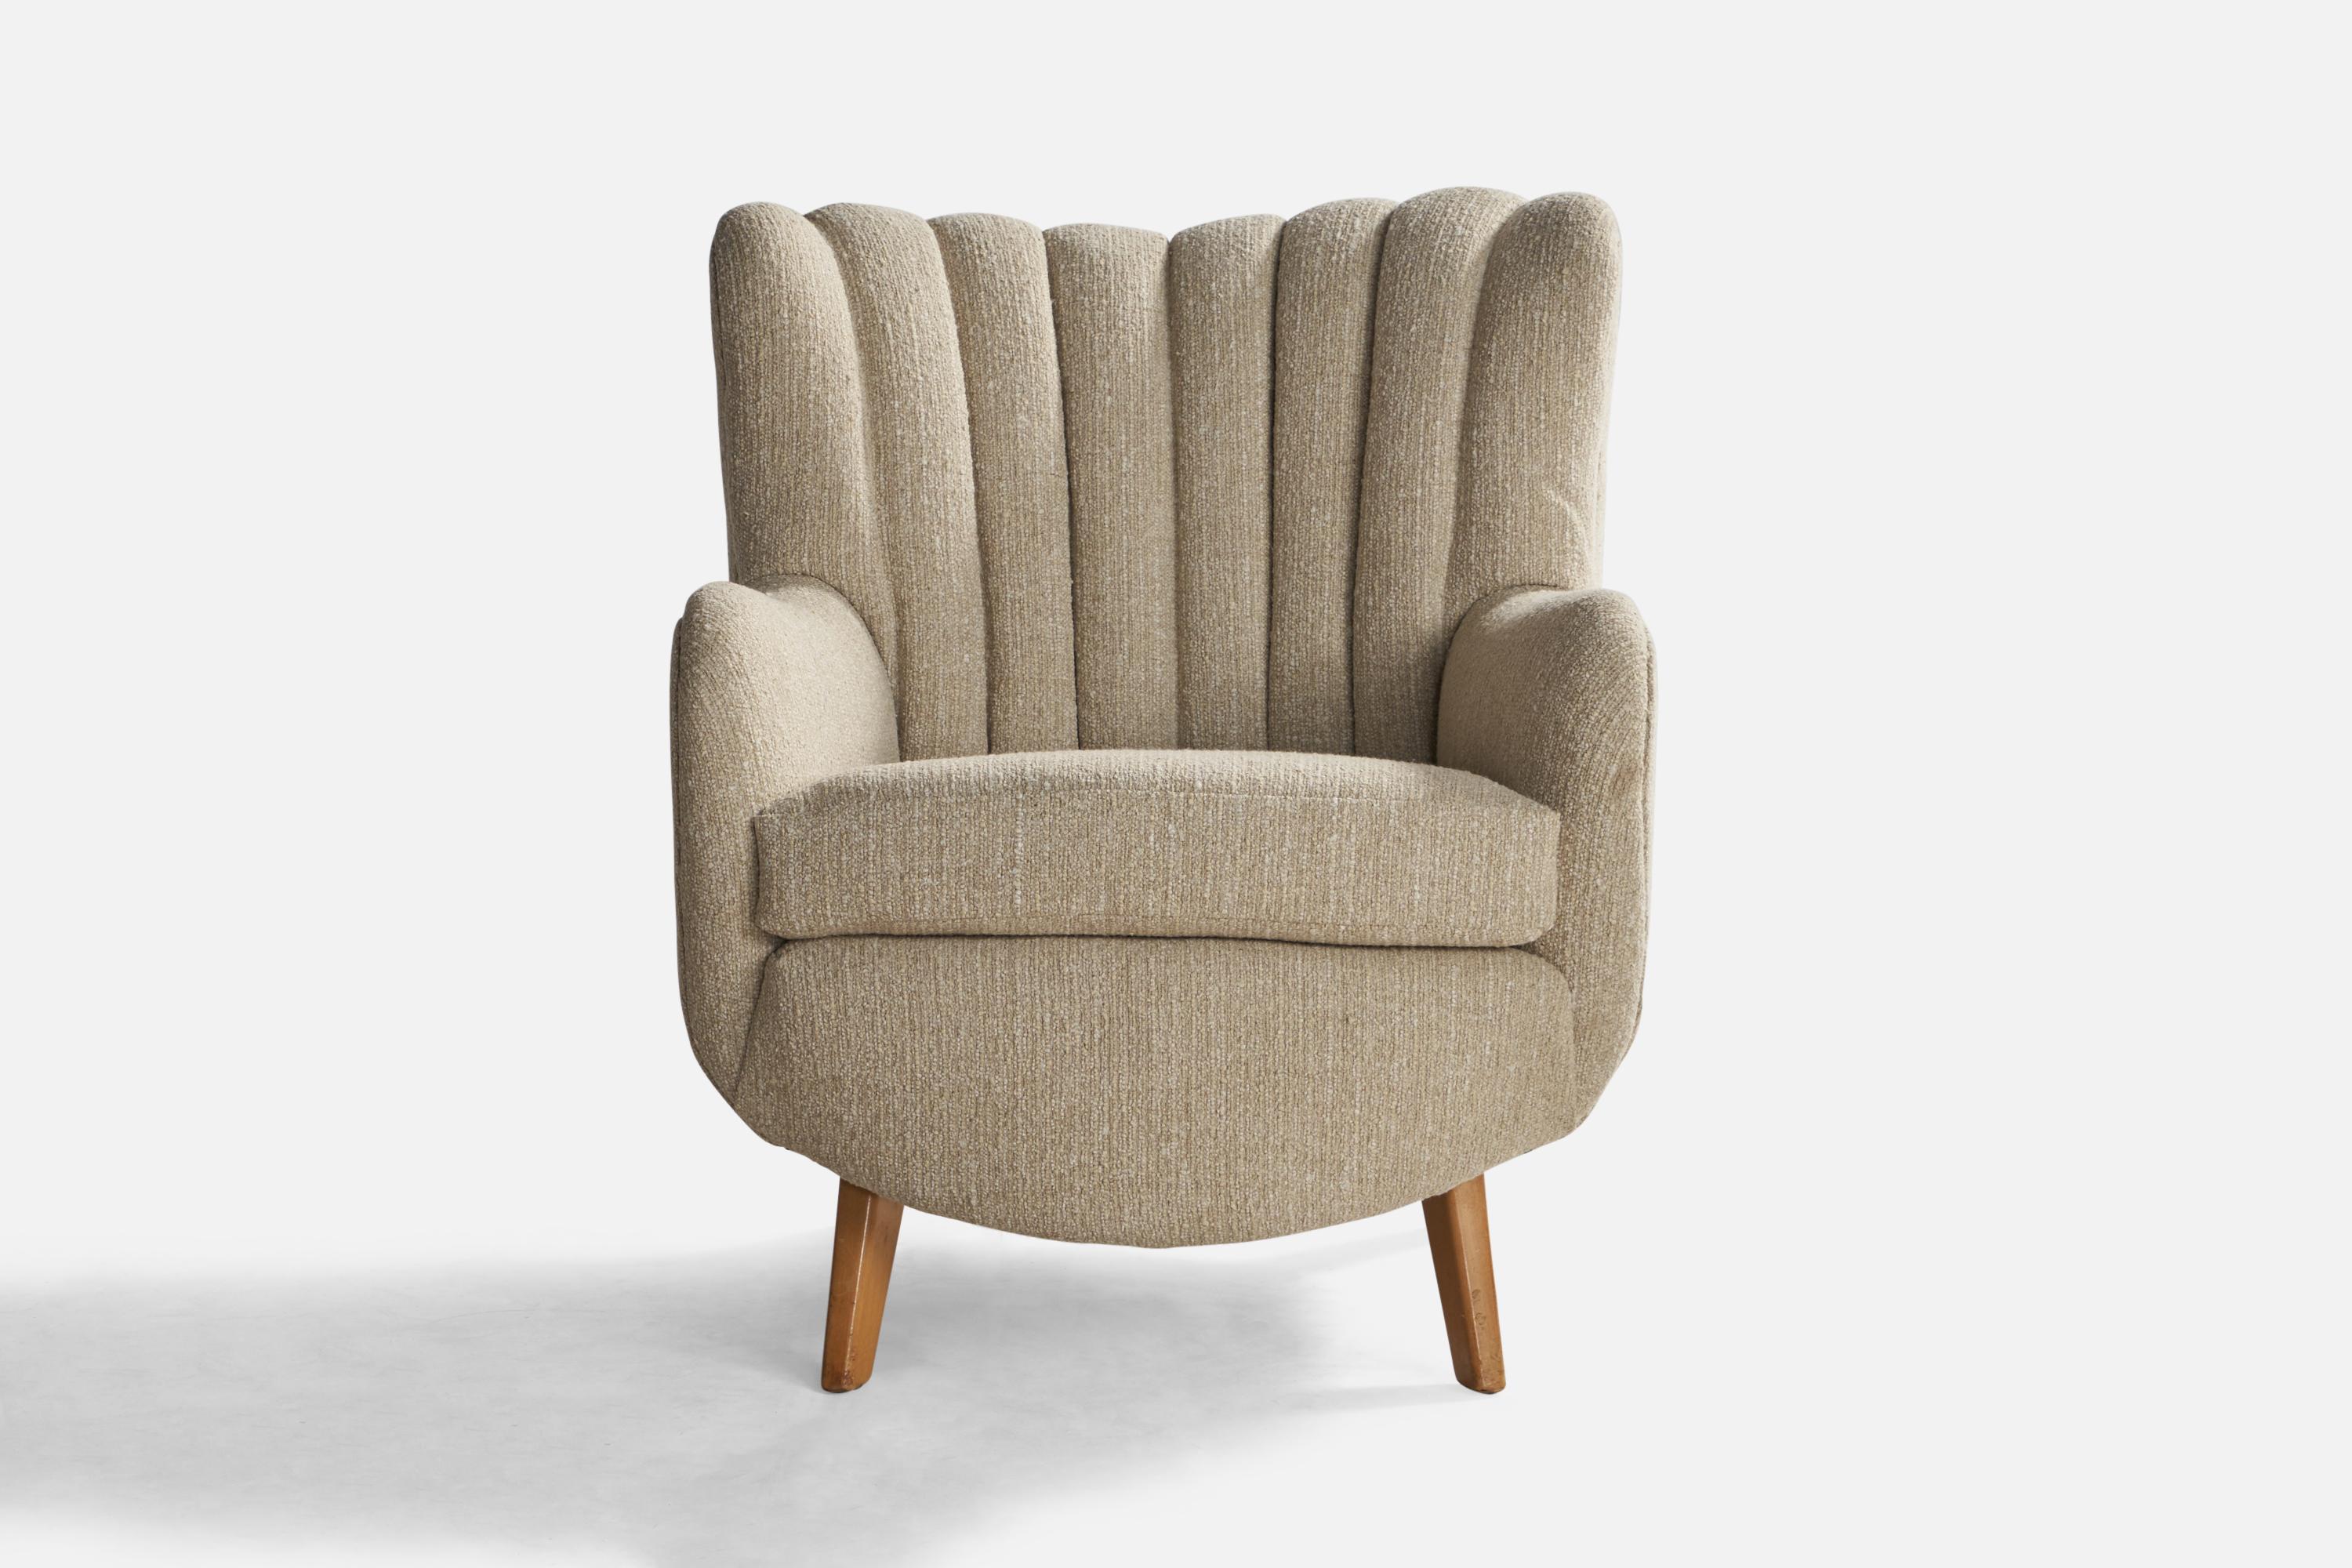 Rare chaise longue en bois et tissu bouclé gris beige modèle 4688, conçue par George Nelson et produite par Herman Miller, États-Unis, vers les années 1940.

Hauteur du siège : 18.5